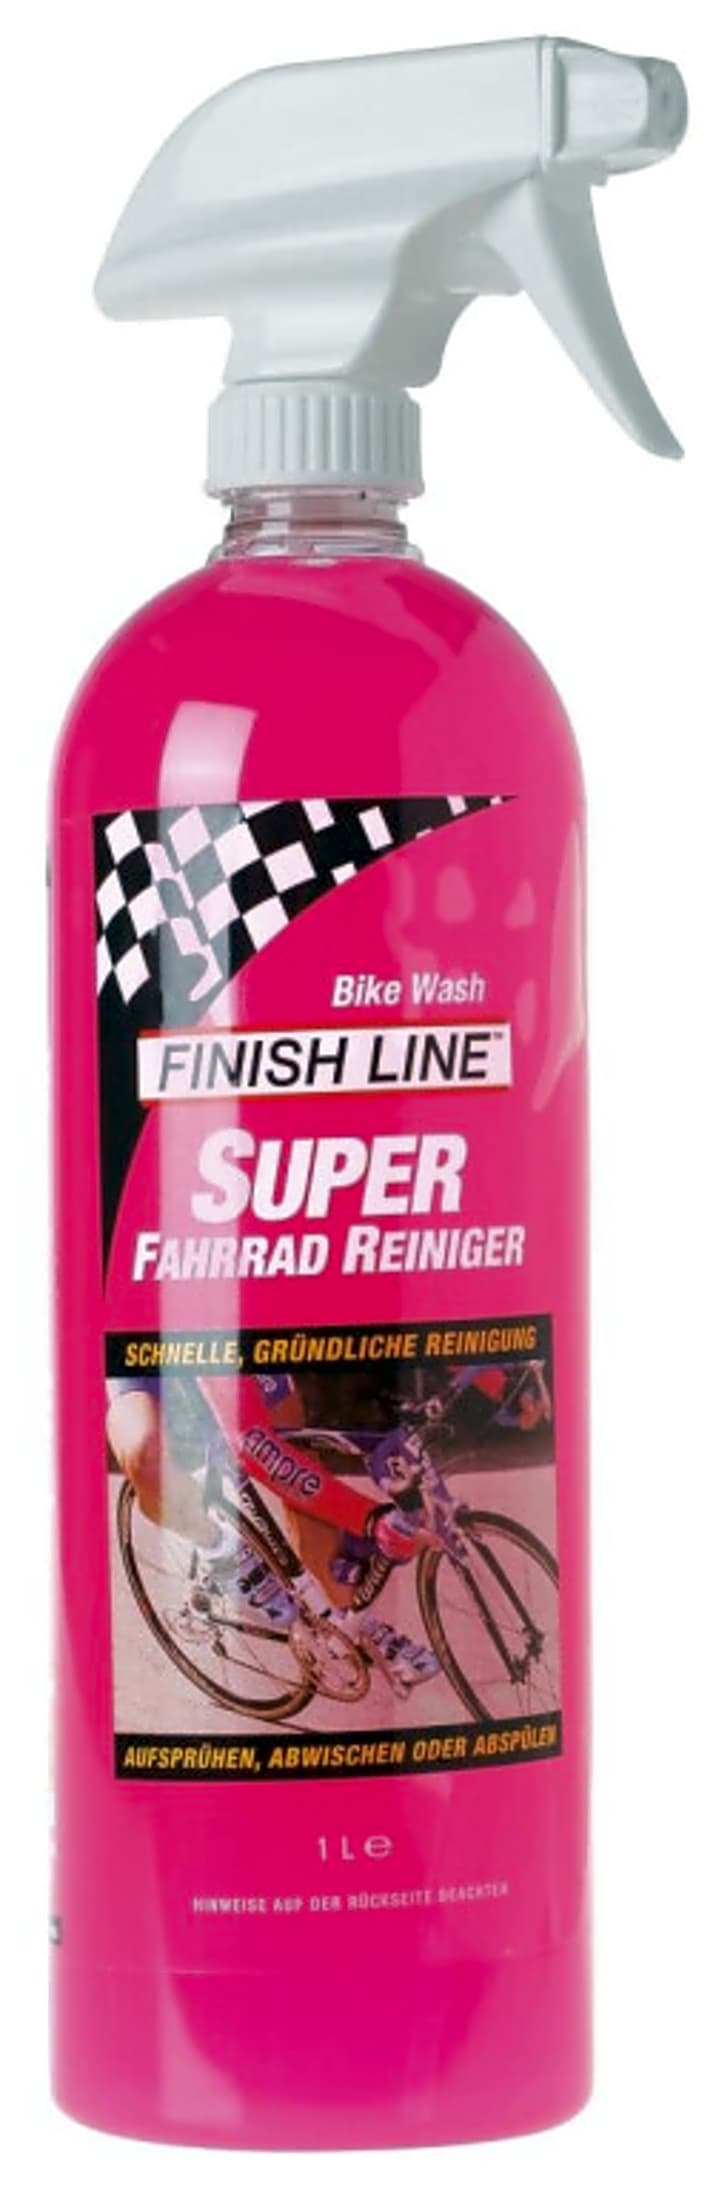   Der Super Bike Wash-Reiniger von Finish Line im Test.